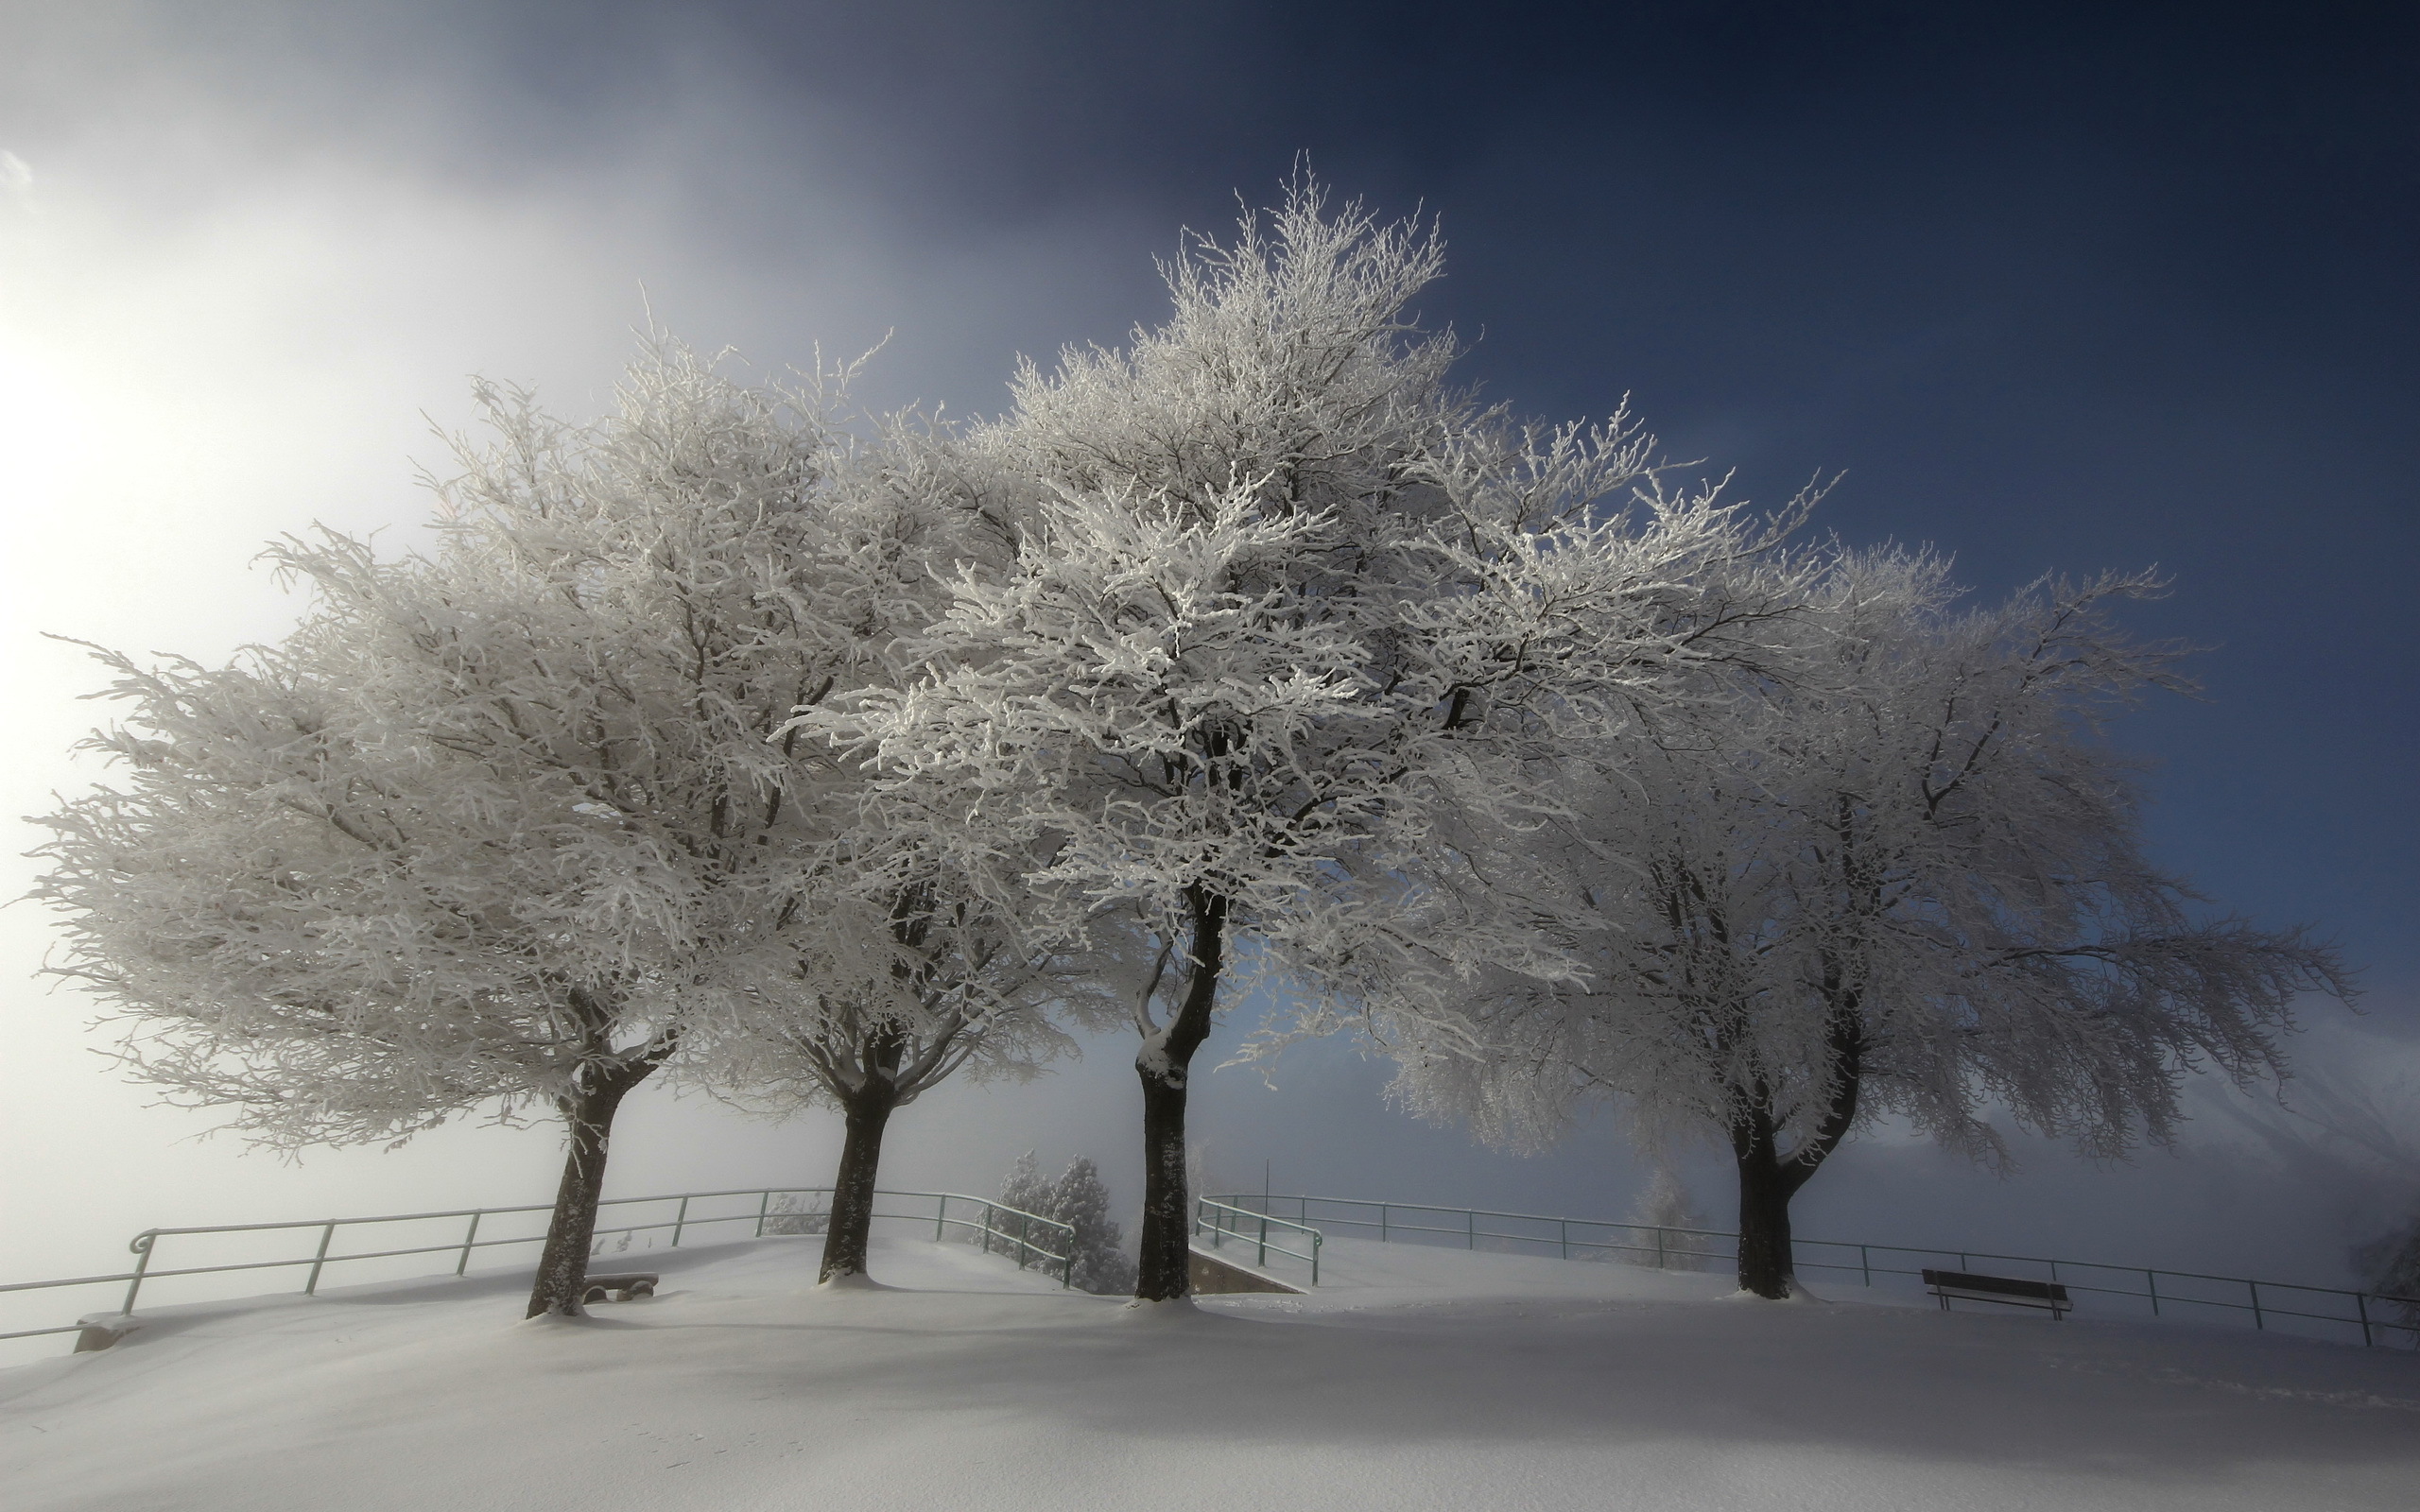 Скачать картинку Зима, Снег, Дерево, Ограда, Фотографии в телефон бесплатно.